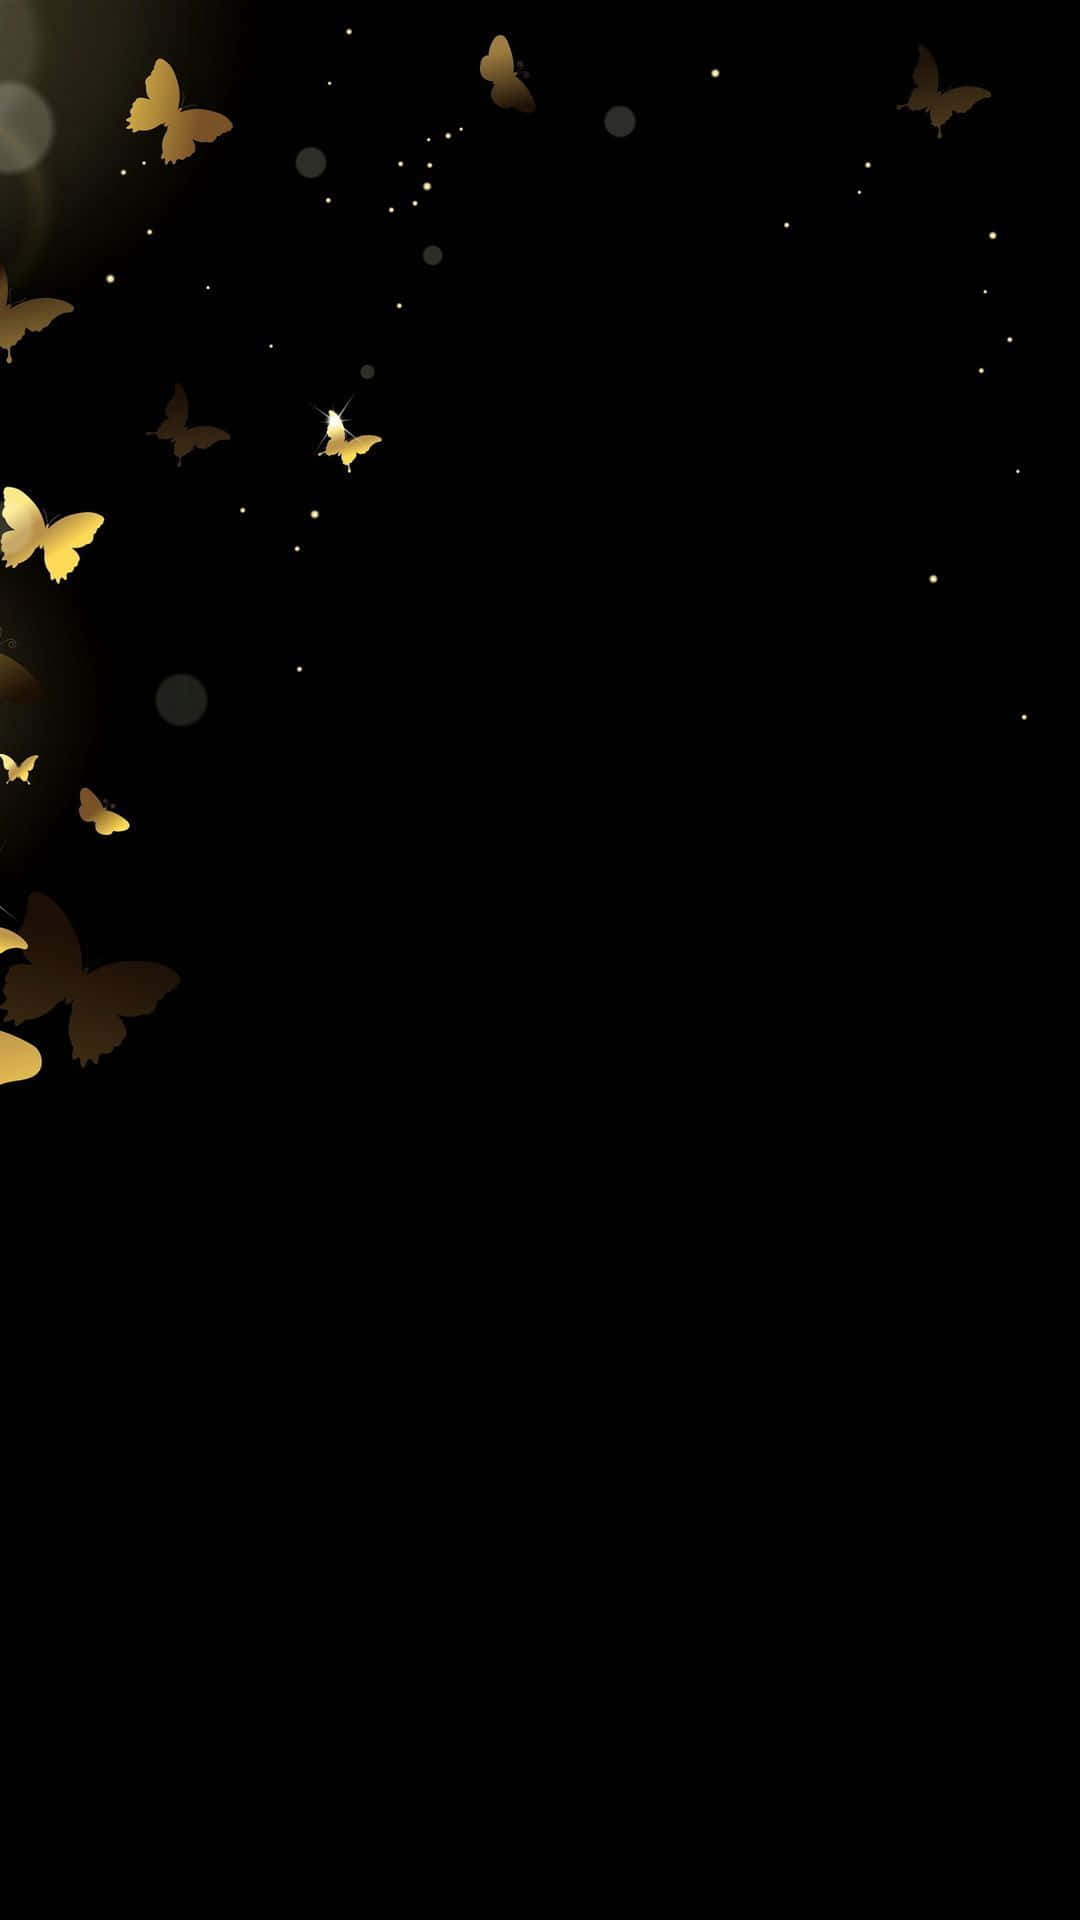 Golden Butterflieson Black Background Wallpaper